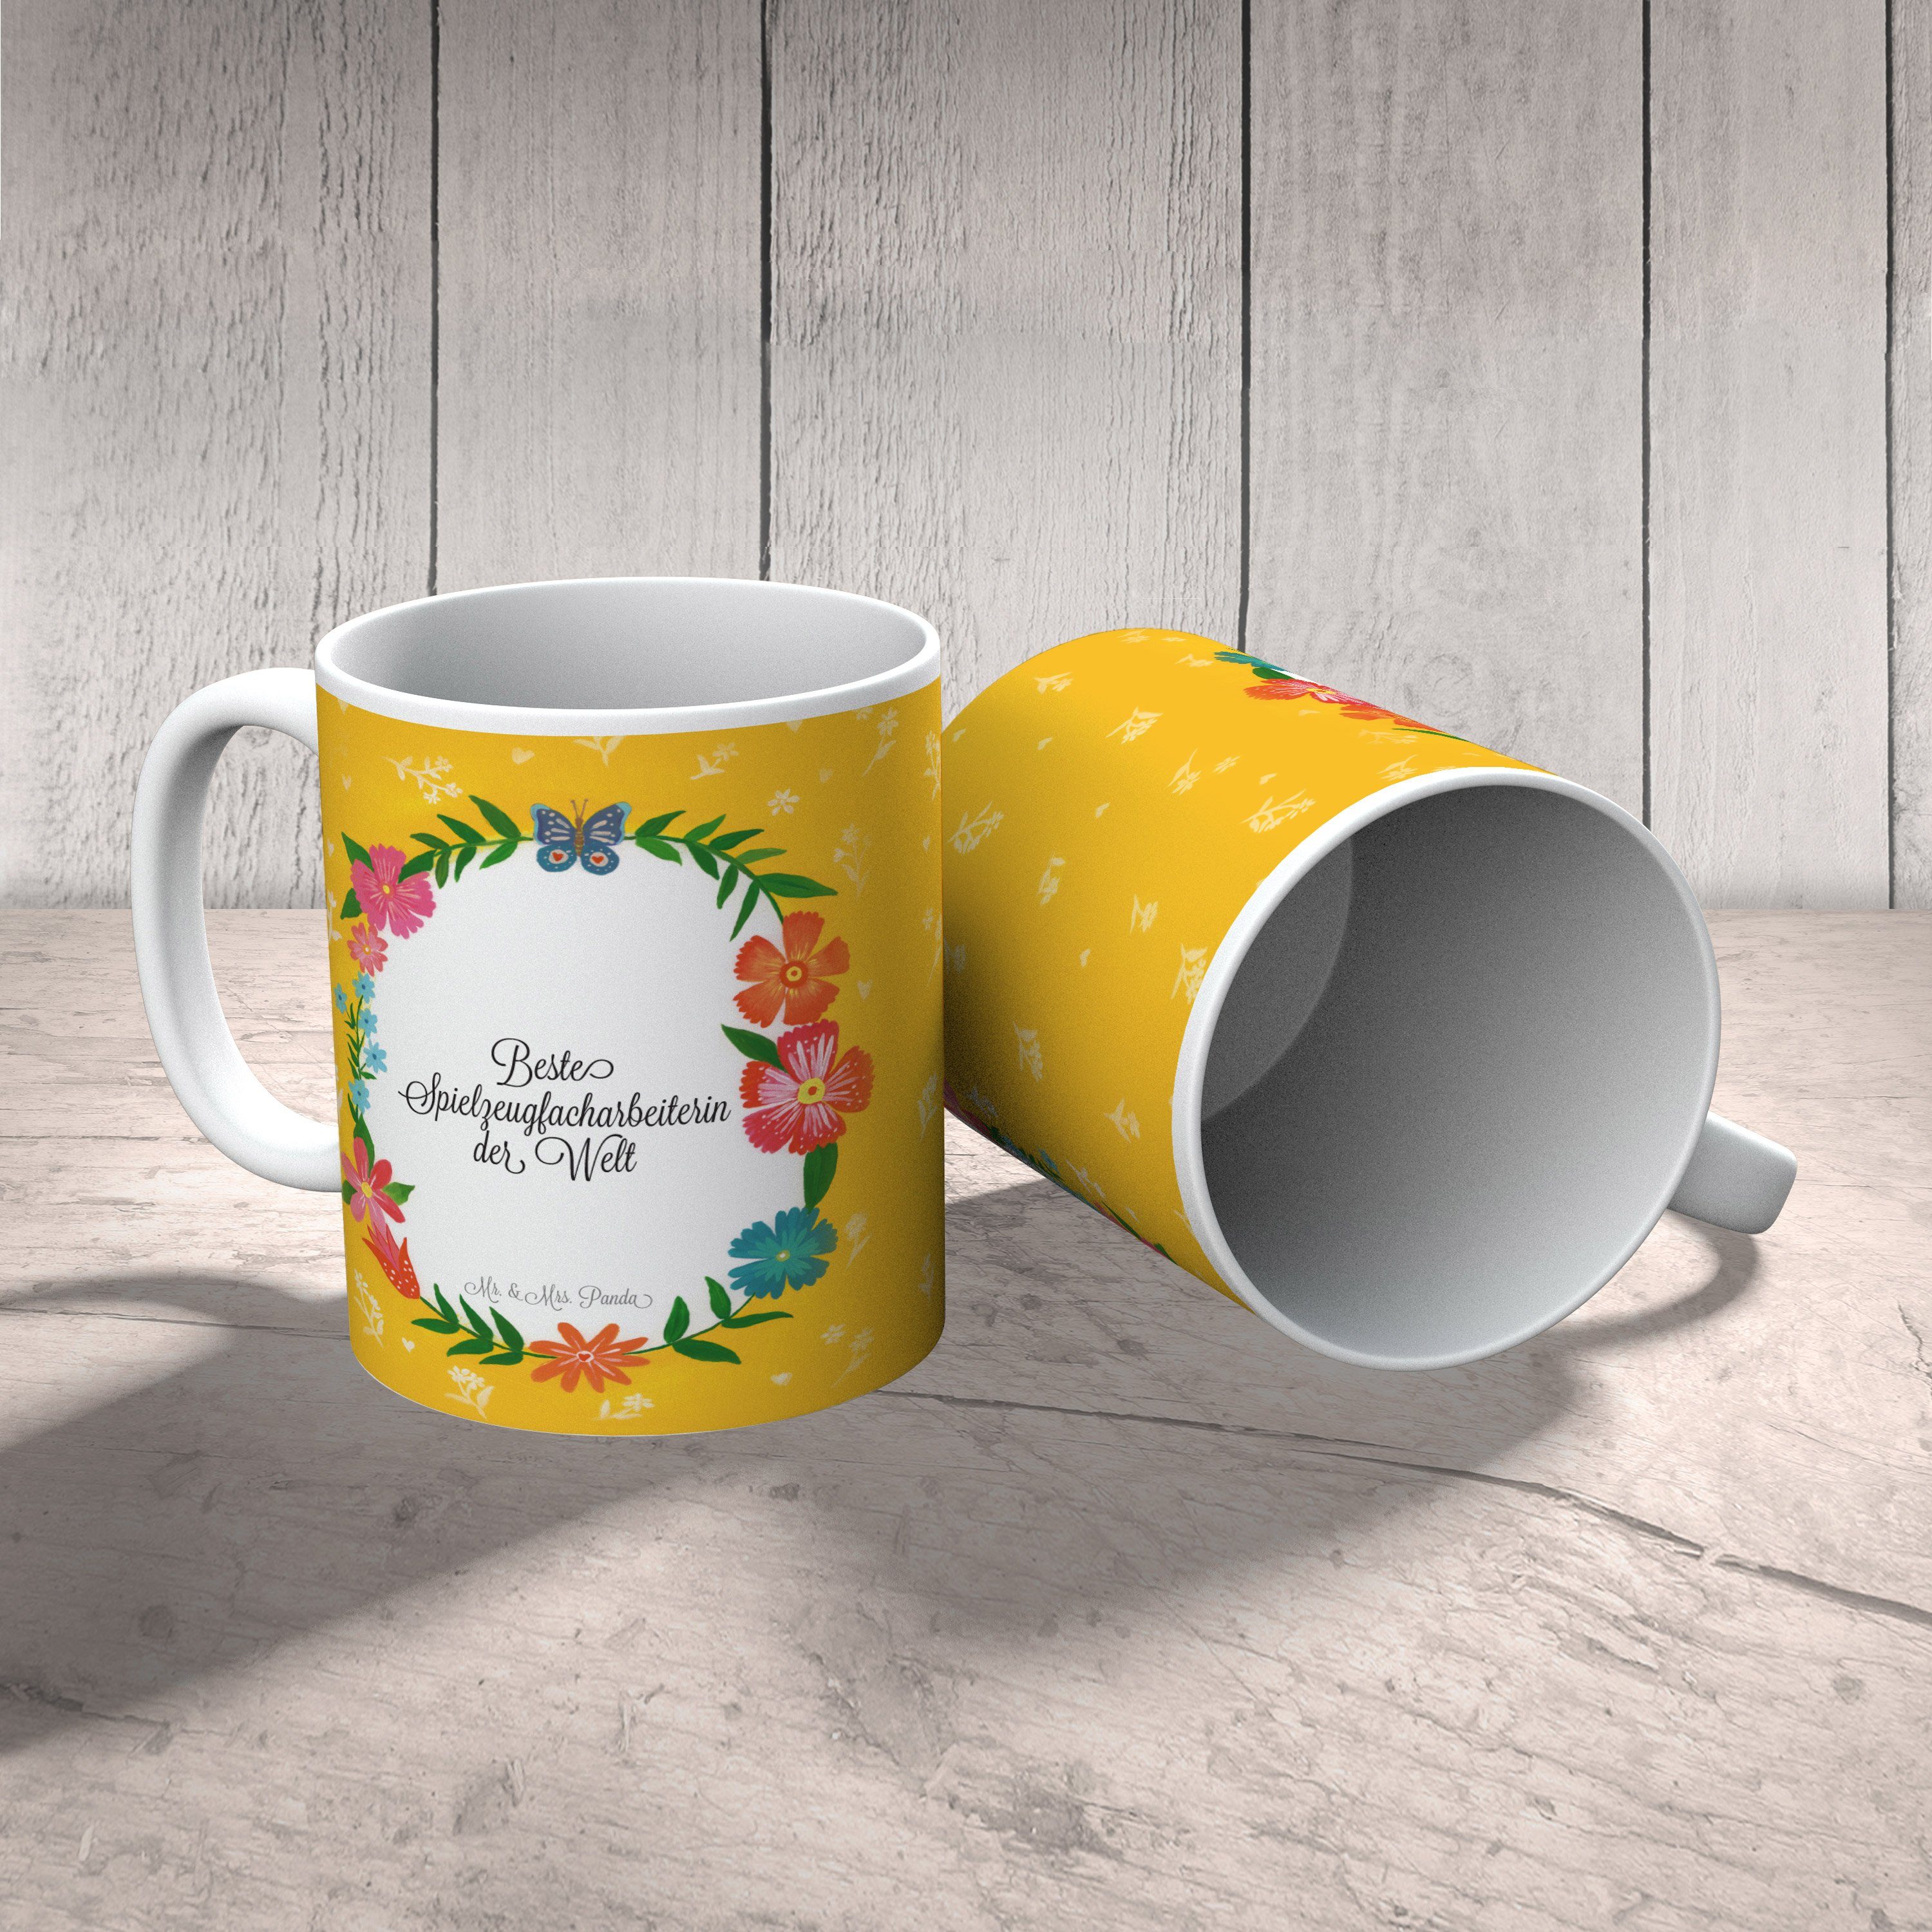 Mr. & Mrs. Gratulation, Geschenk, Studium, Panda Tasse Keramik Tasse, - Spielzeugfacharbeiterin Teet